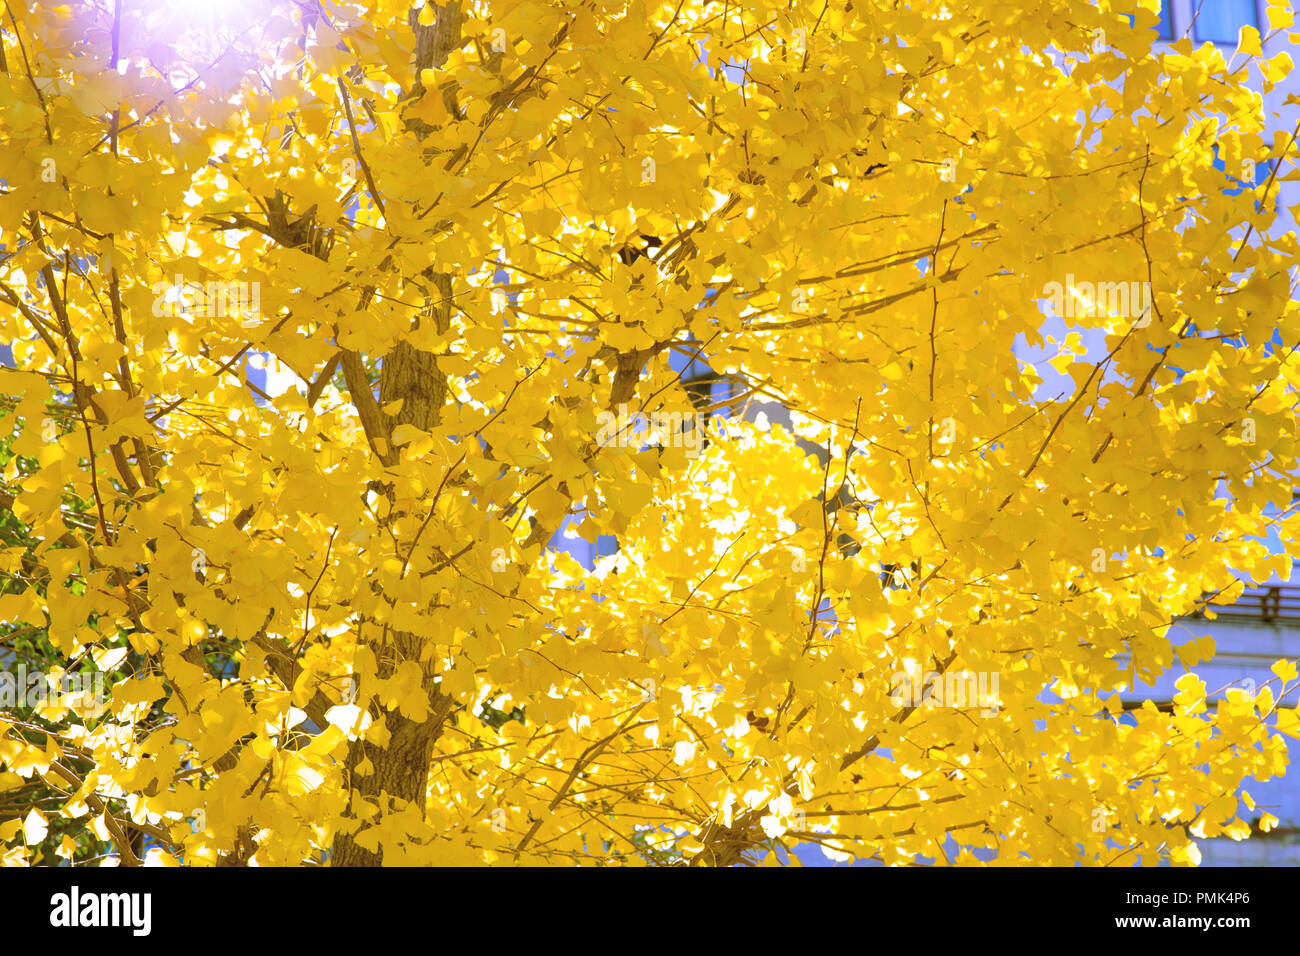 Gelbe Pflanzen und Bäume Ginkgo Blatt in Japan Herbst Natur Laub Nahaufnahme. Stockfoto